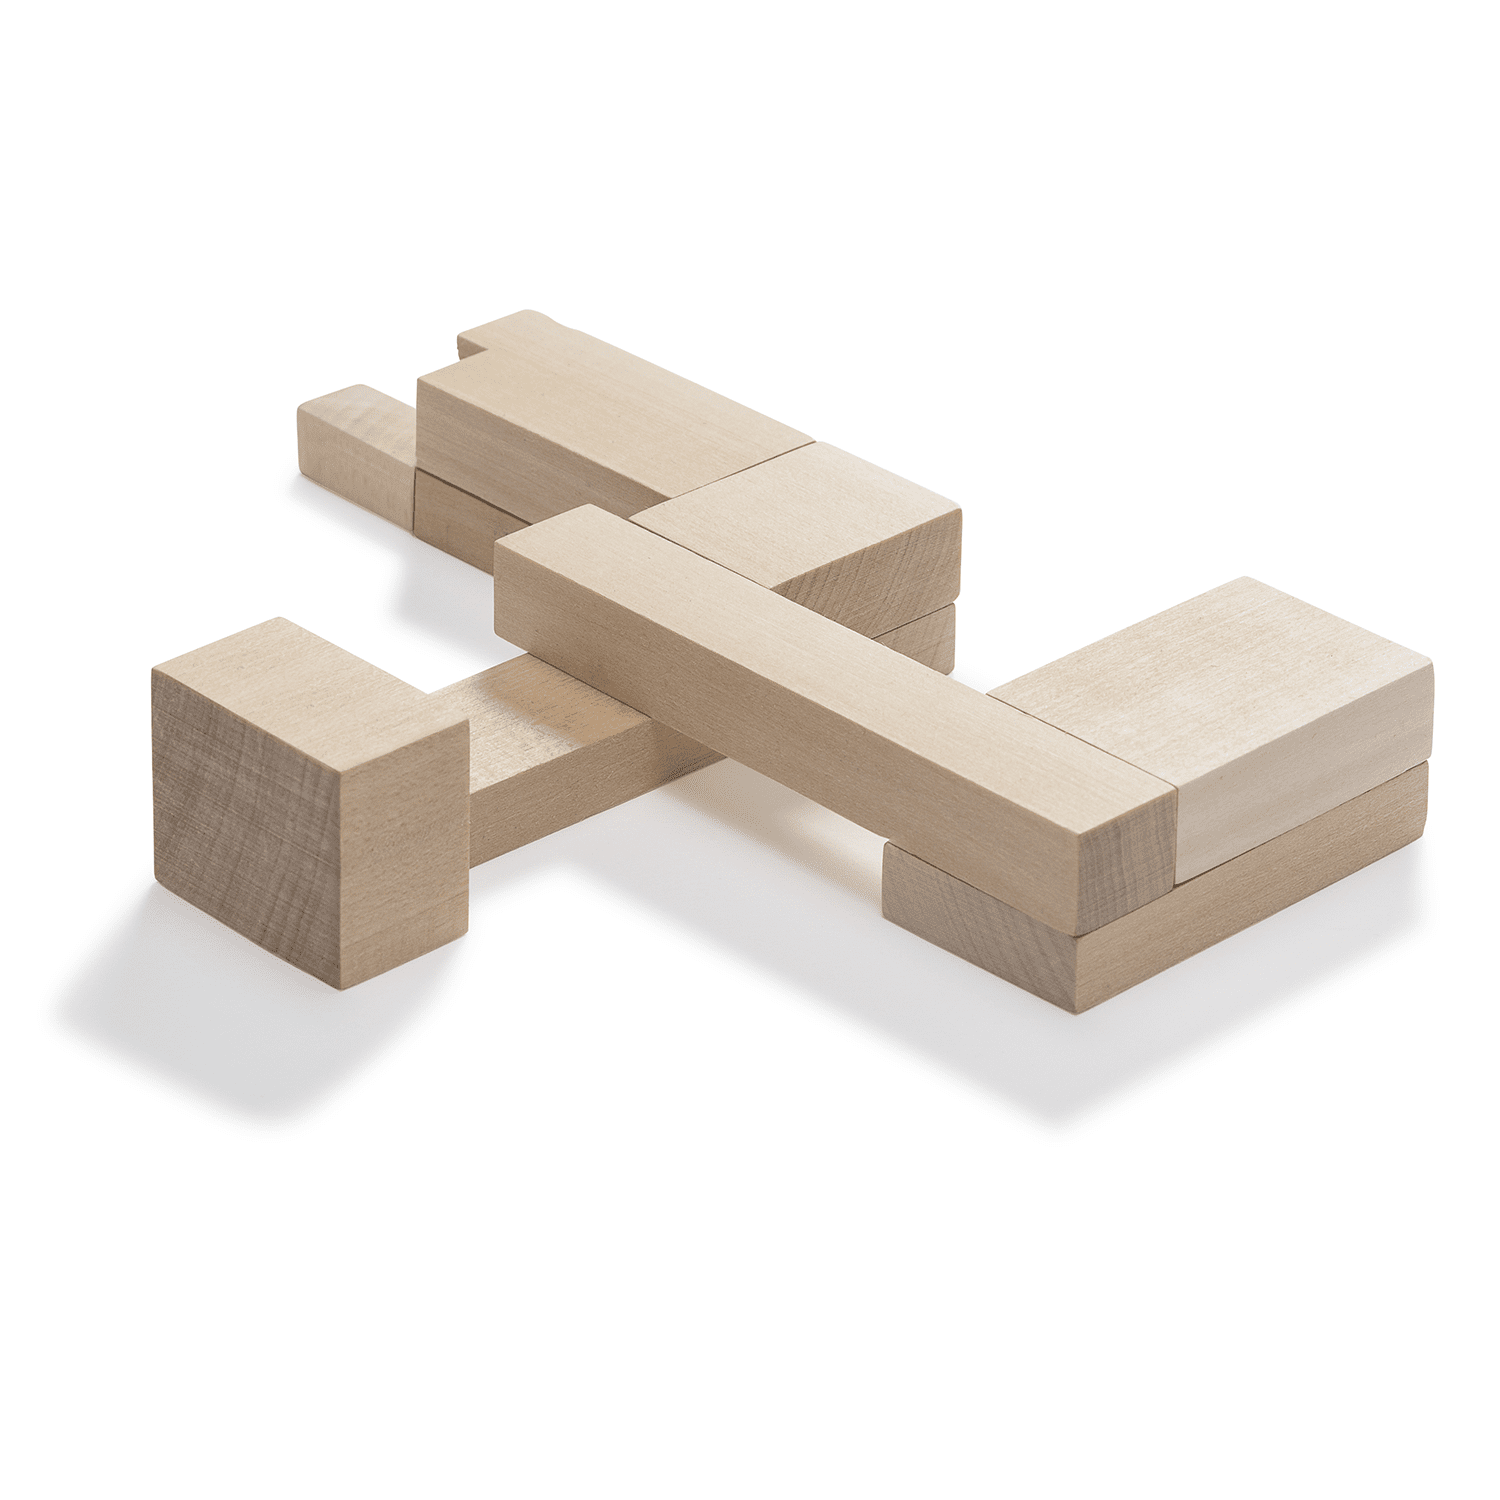 Bauhaus Dessau Building Puzzle的图片
